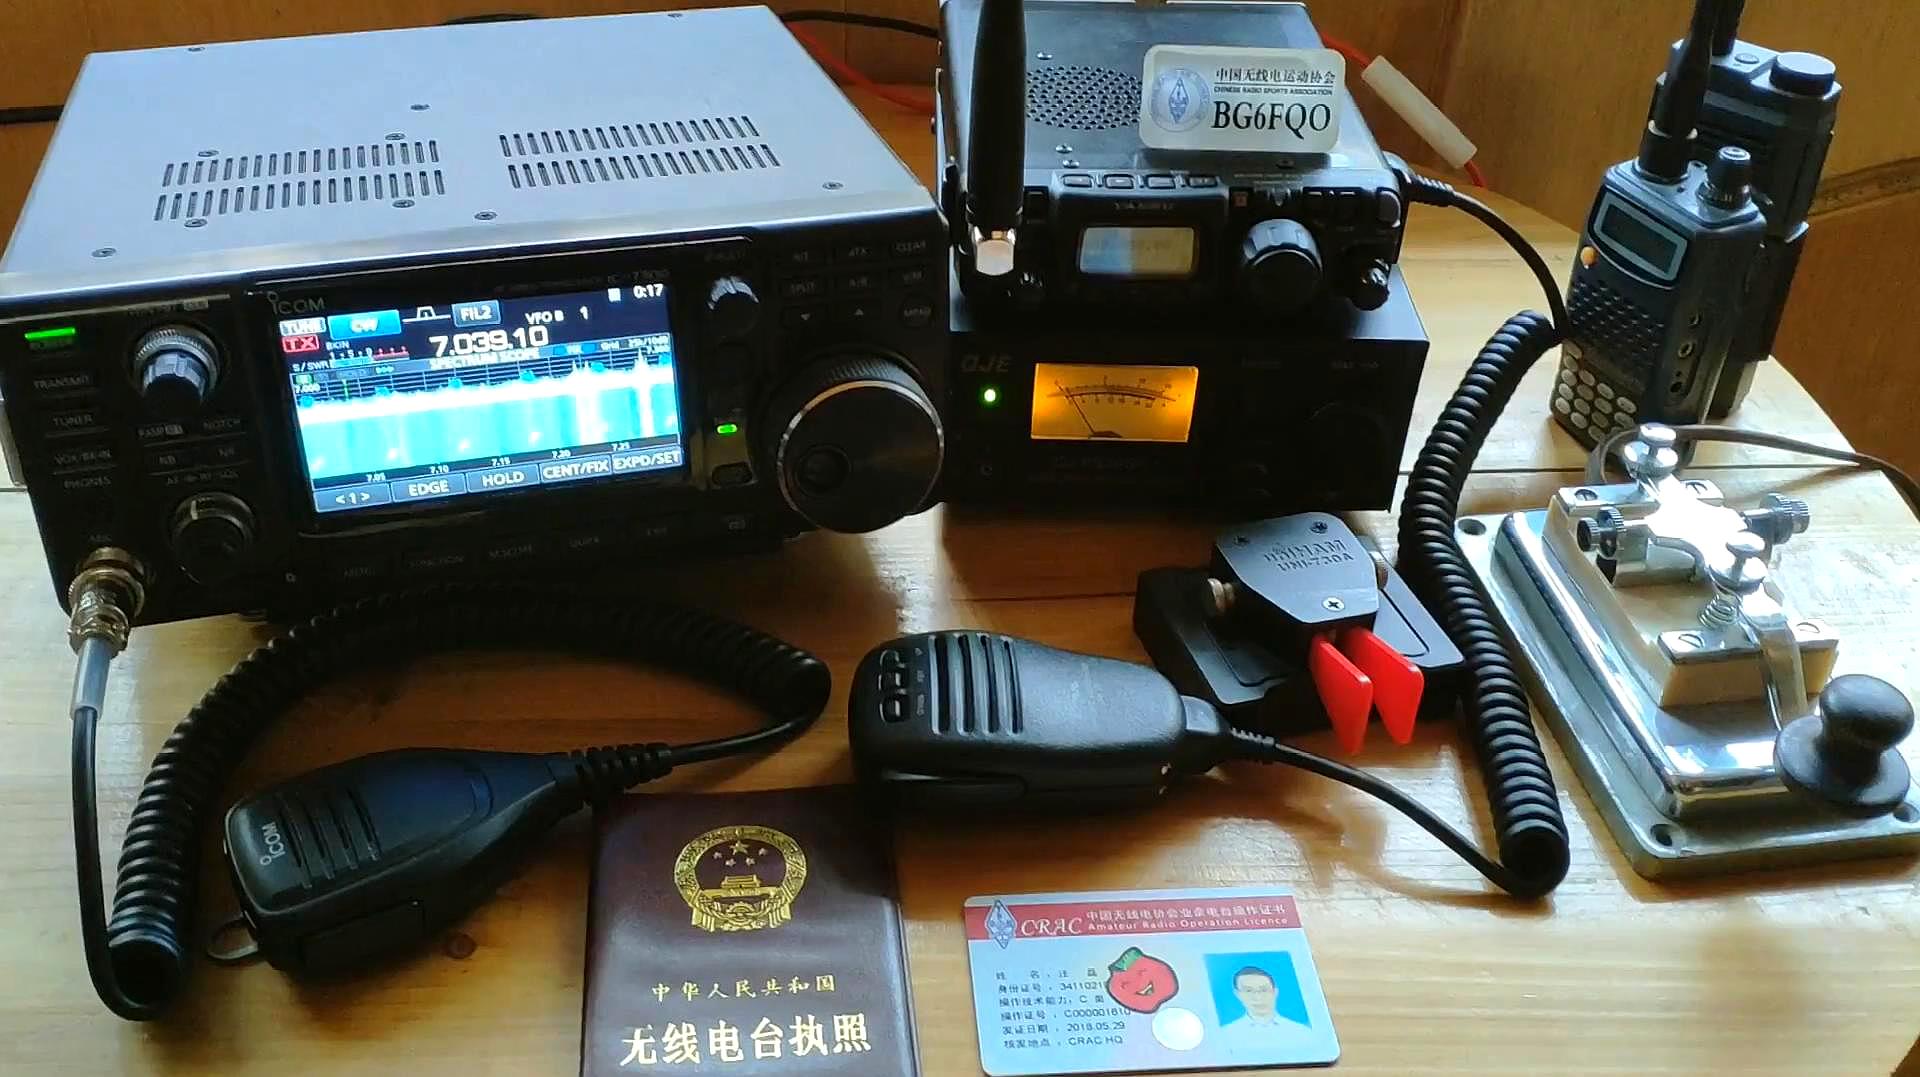 参加2019通联中国之省wapc无线电比赛,用摩尔斯电码首通上海电台